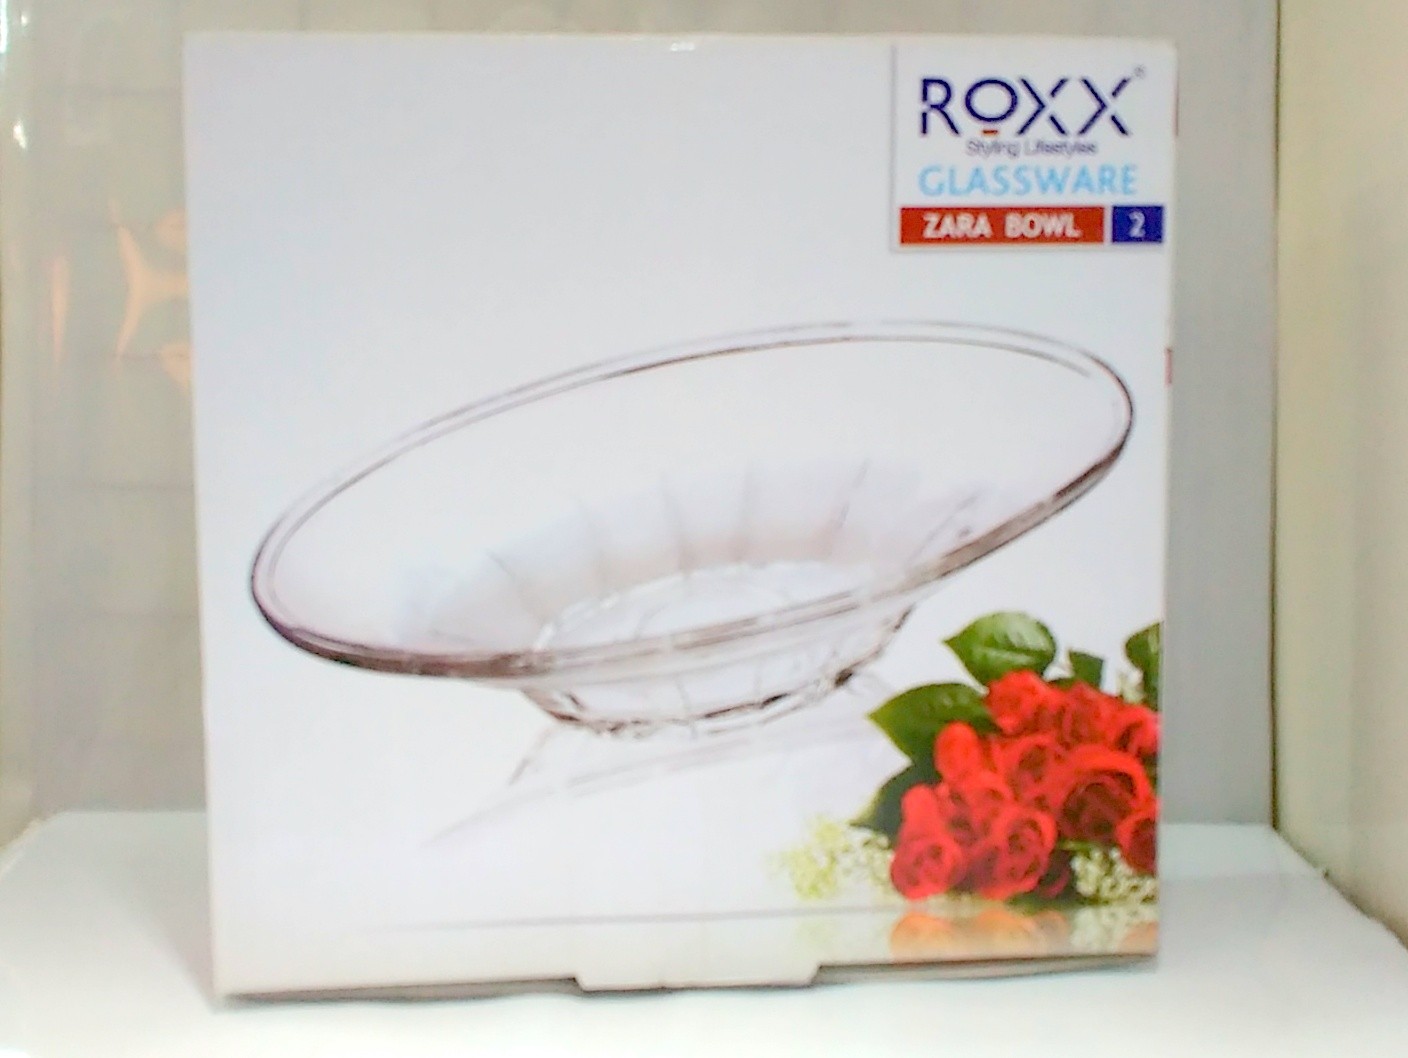 ROXX GLASSWARE ZARA BOWL